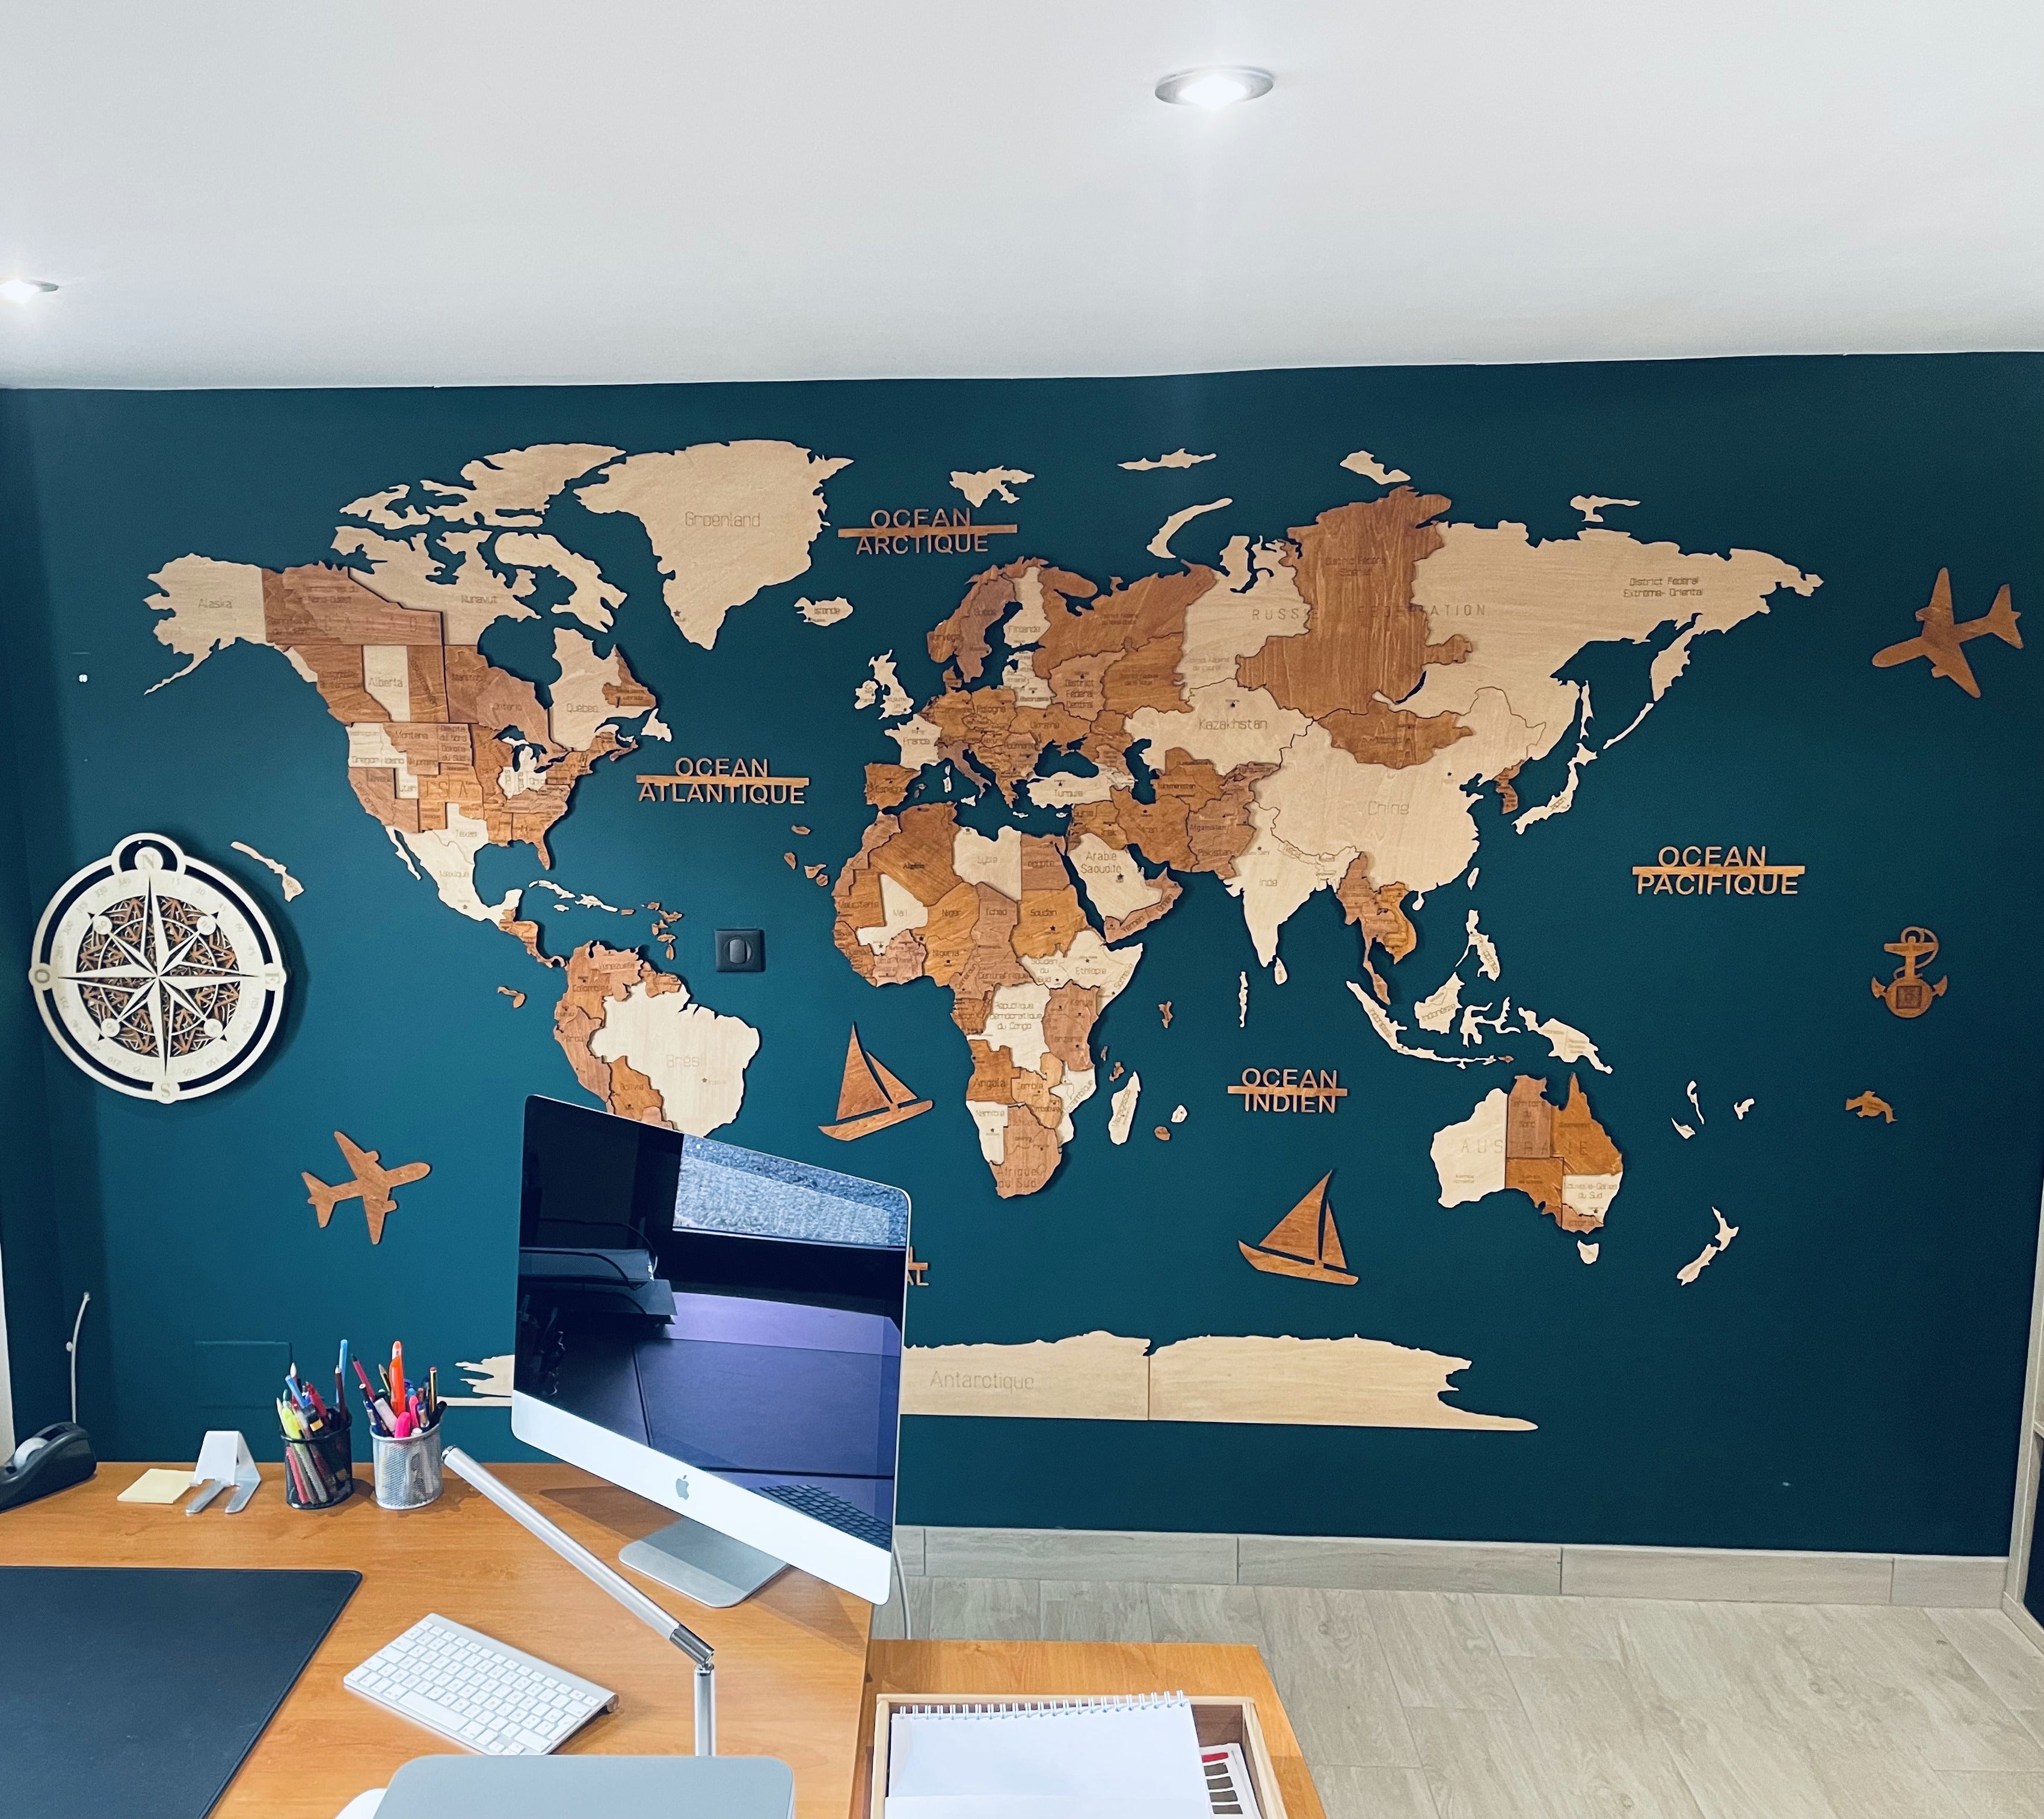 Géante carte du monde vintage XXL en bois avec 5x horloge murale